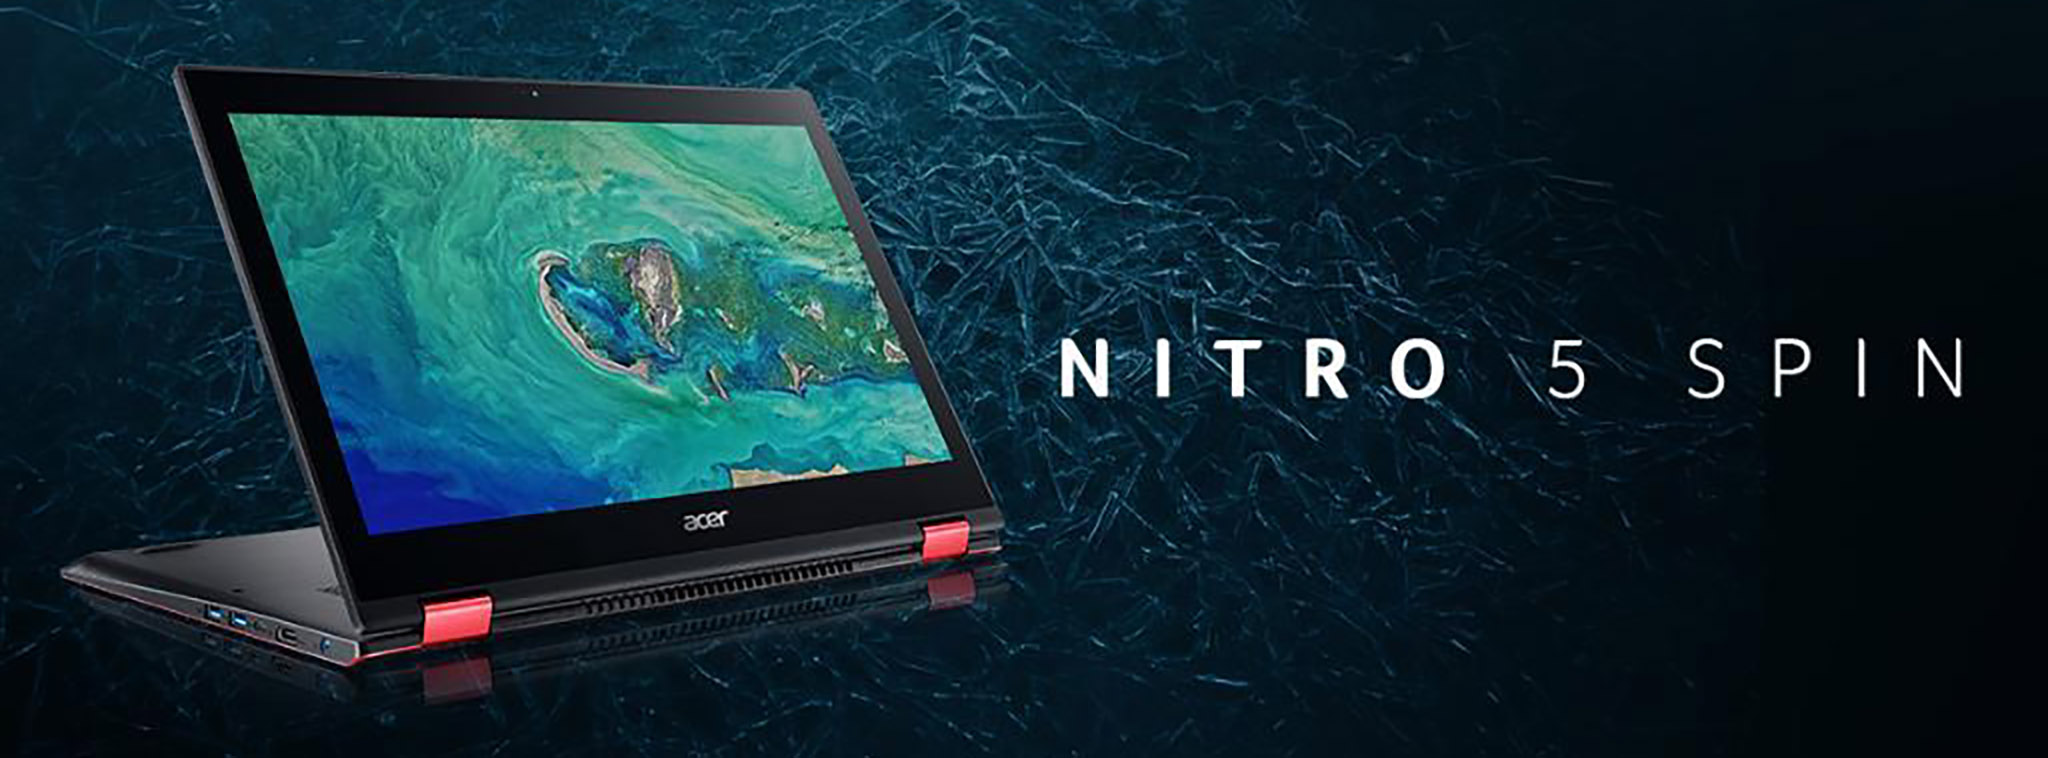 Acer Nitro 5 Spin - laptop chơi game màn hình cảm ứng xoay, Core i thế hệ 8, GTX 1050, giá từ $1000